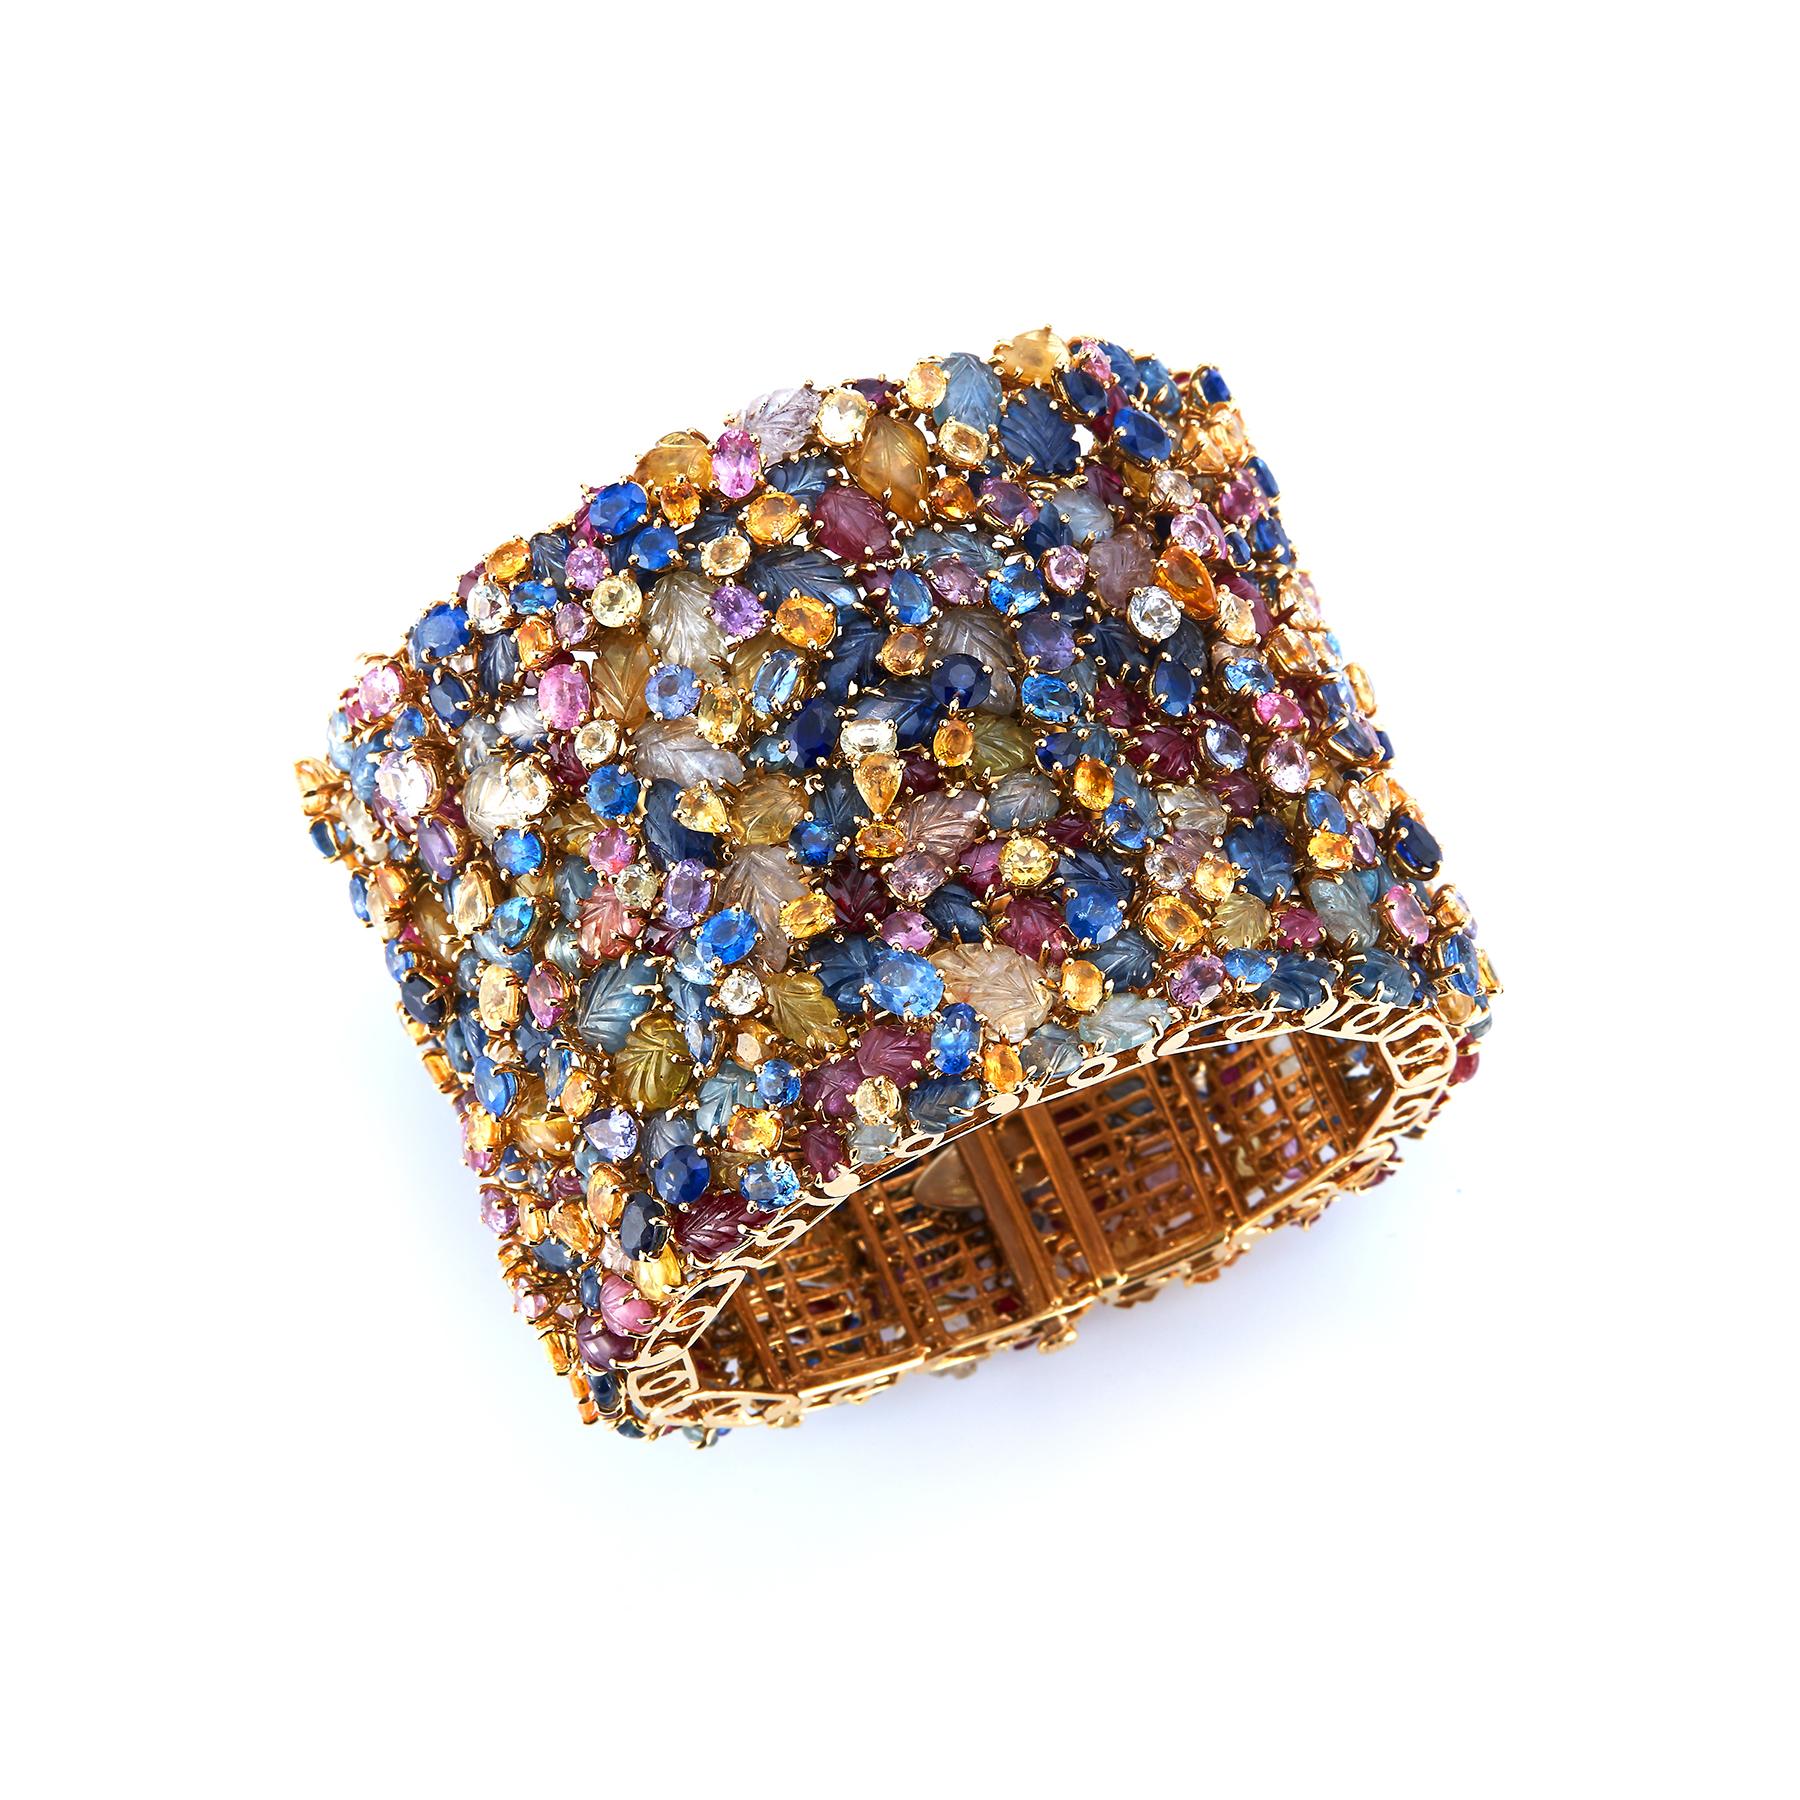 Tony Duquette Mehrfarben-Saphir-Armband 
Dieses Armband besteht aus verschieden geformten, facettierten und geschnitzten farbigen Saphiren, darunter blaue, gelbe, rosa und geschnitzte Rubine.
18k Gelbgold.
Unterzeichnet von Tony